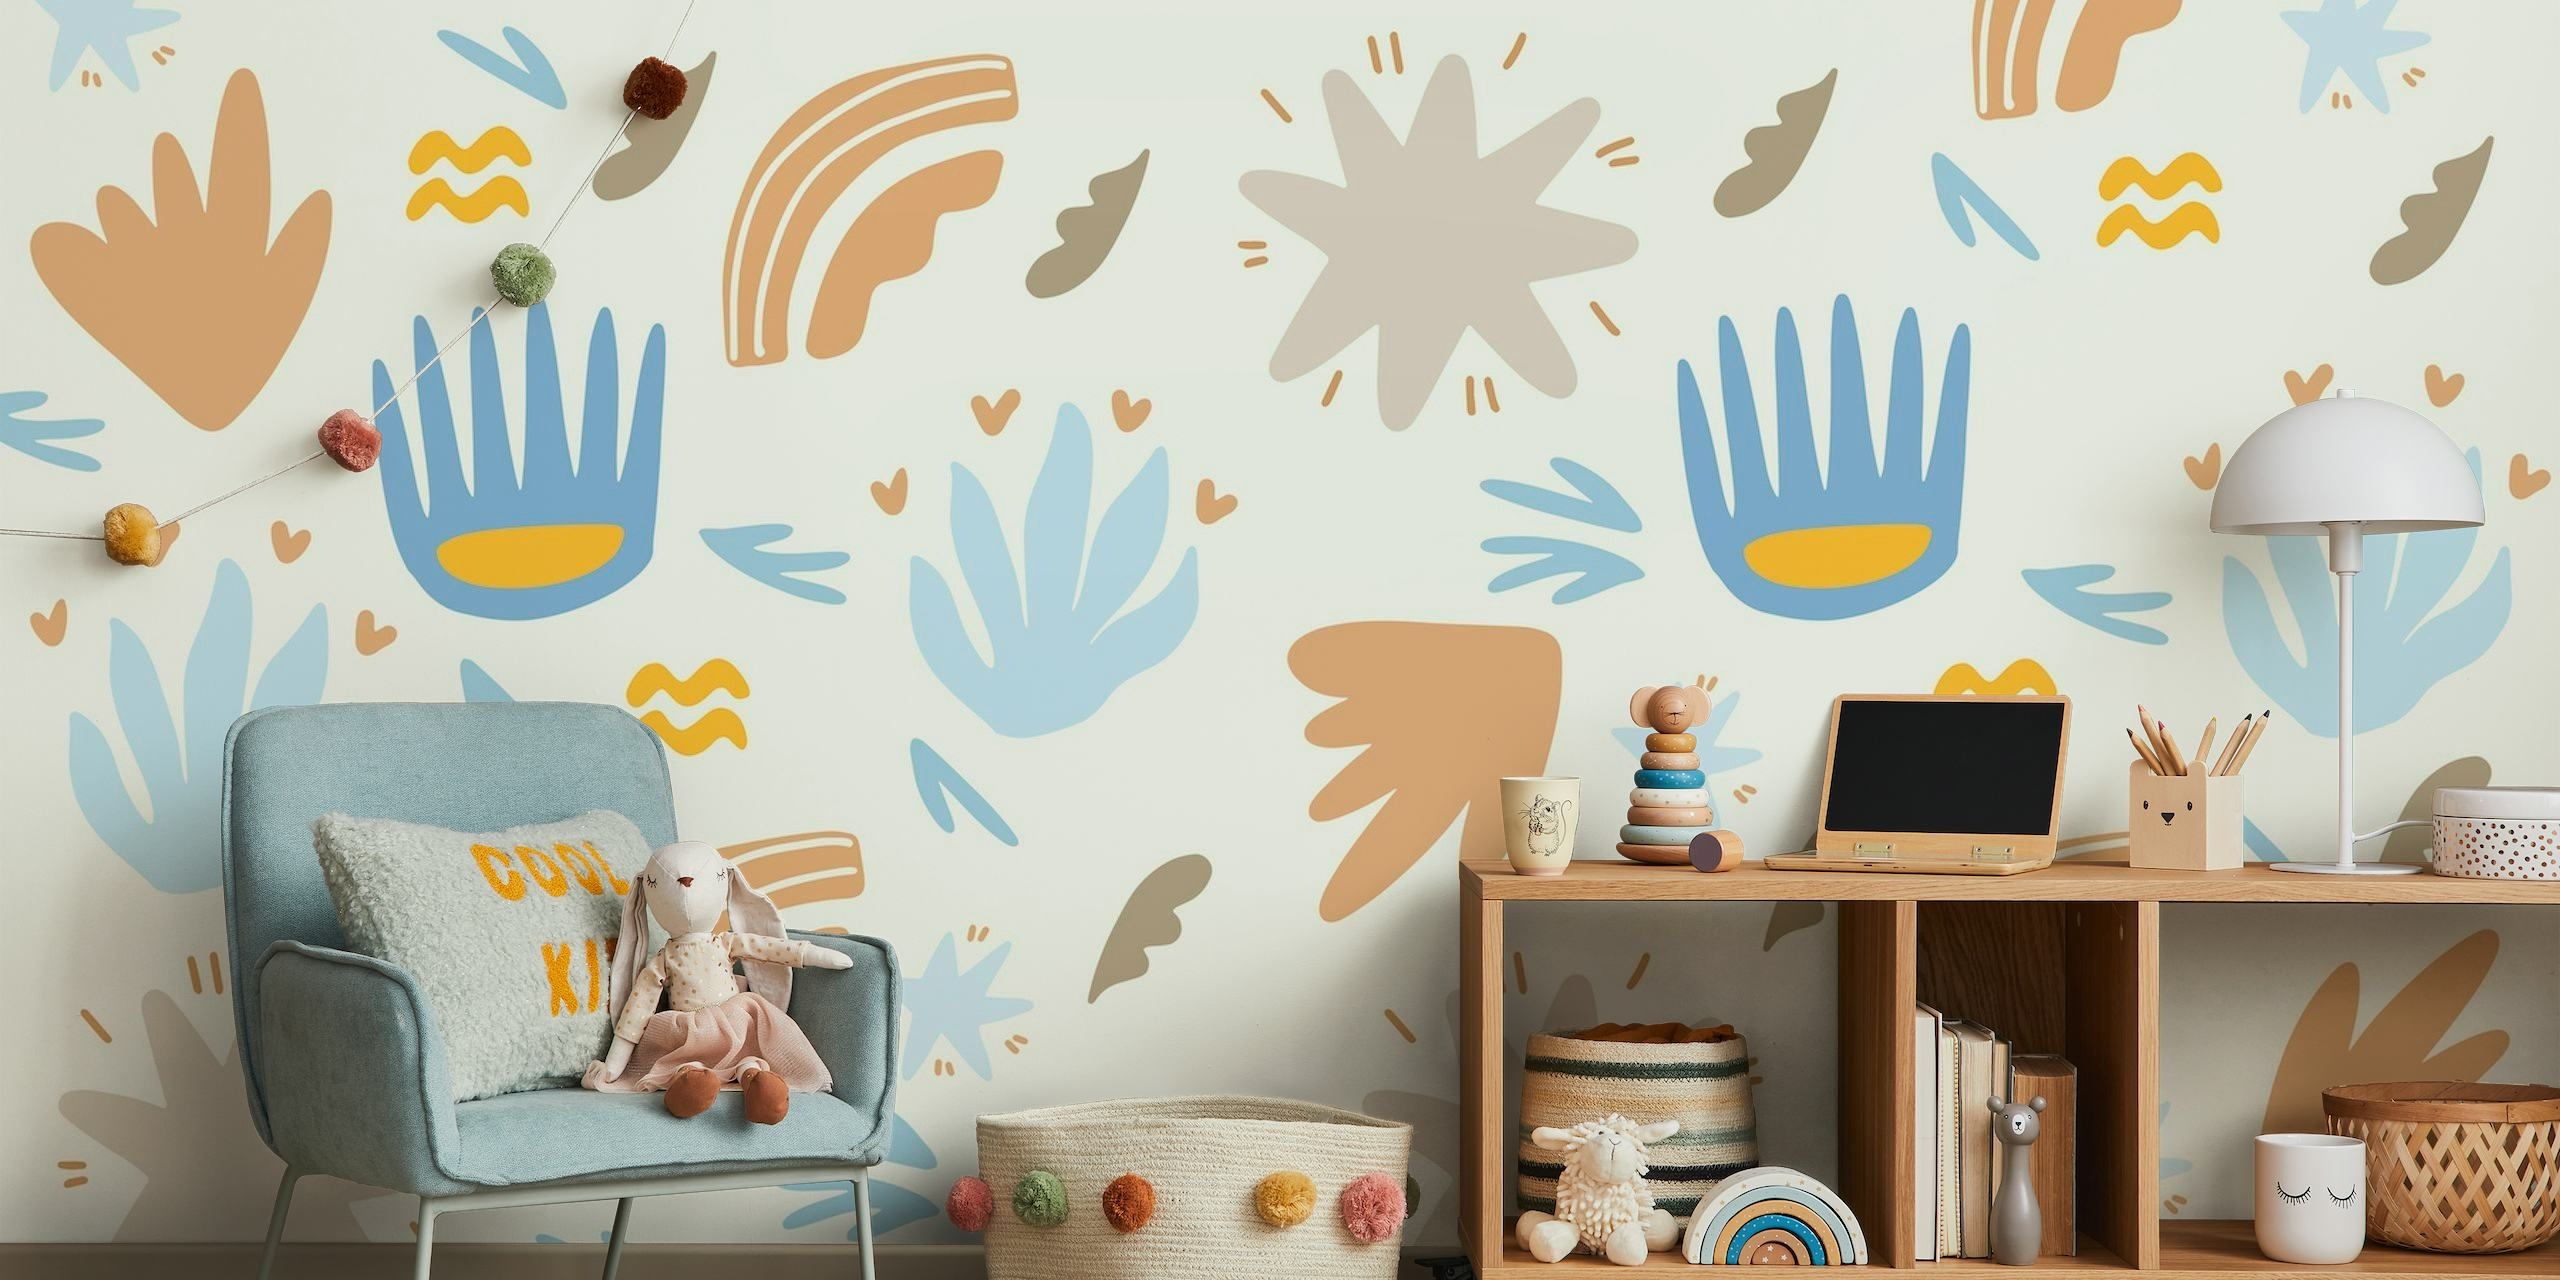 Dječji zidni mural na temu ljeta s apstraktnim oblicima i otkačenim motivima u plavoj, oker i terra cotta boji